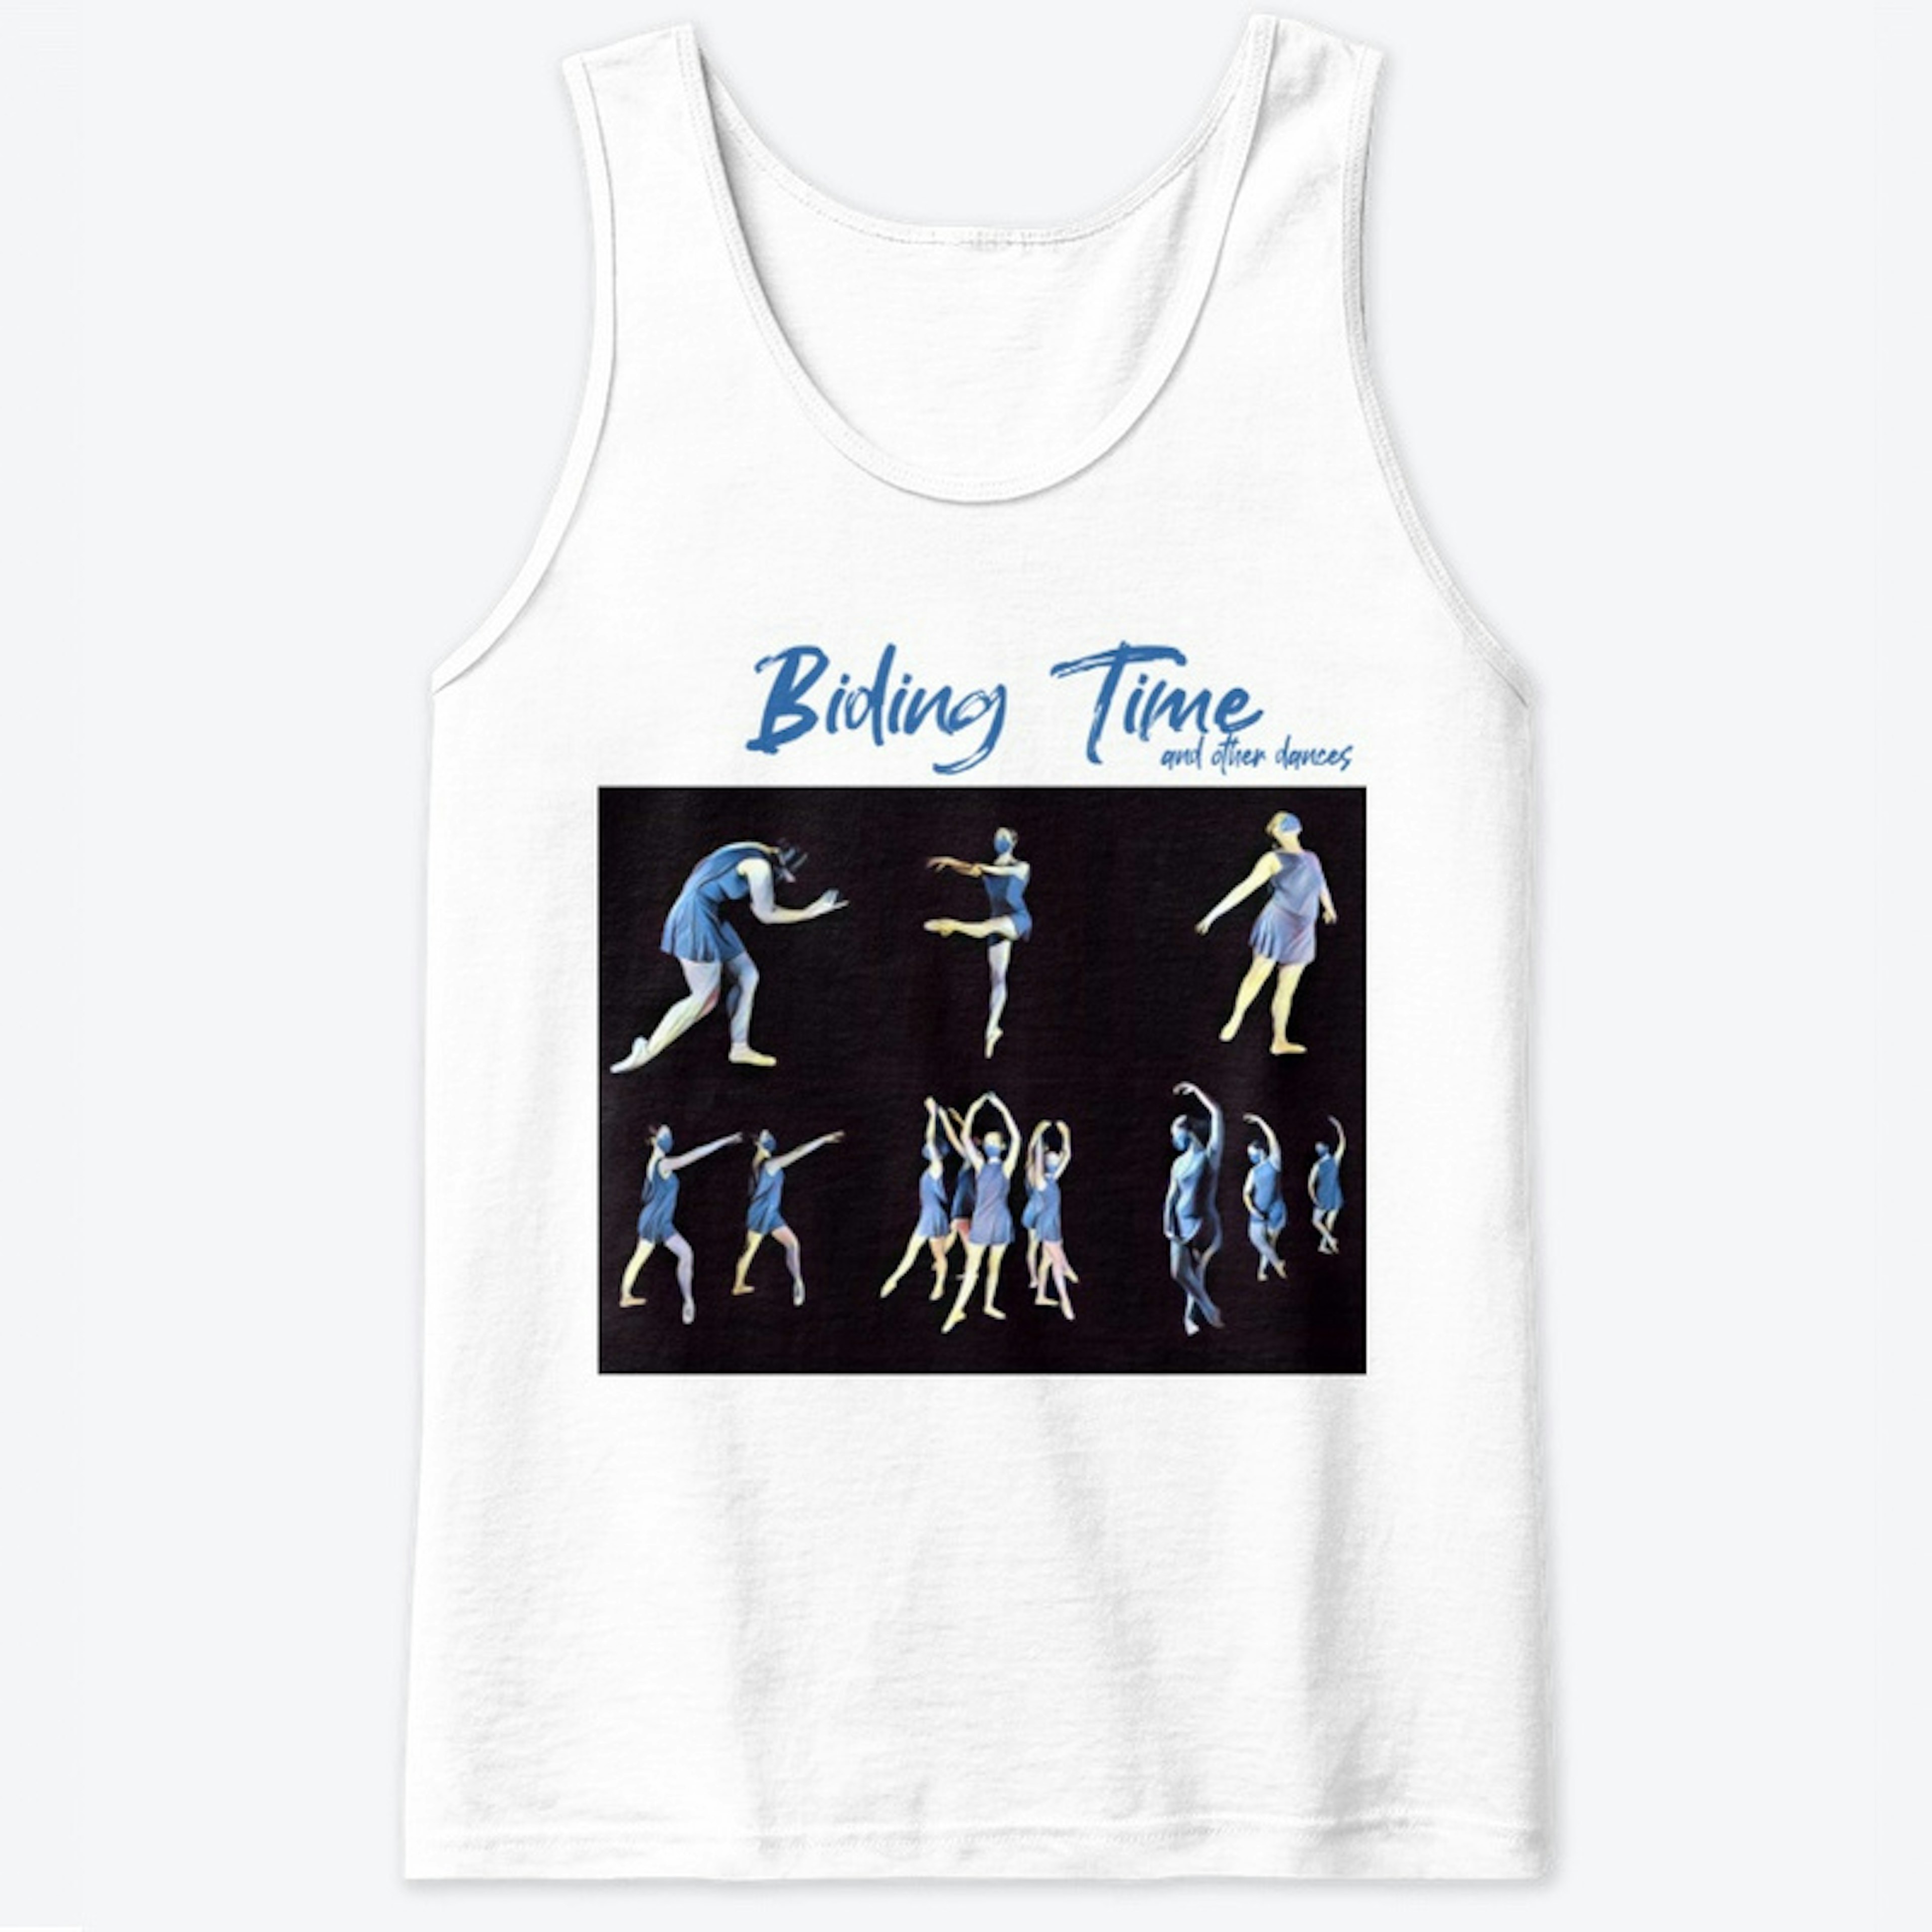 Thrive Ballet June 2021 show shirt